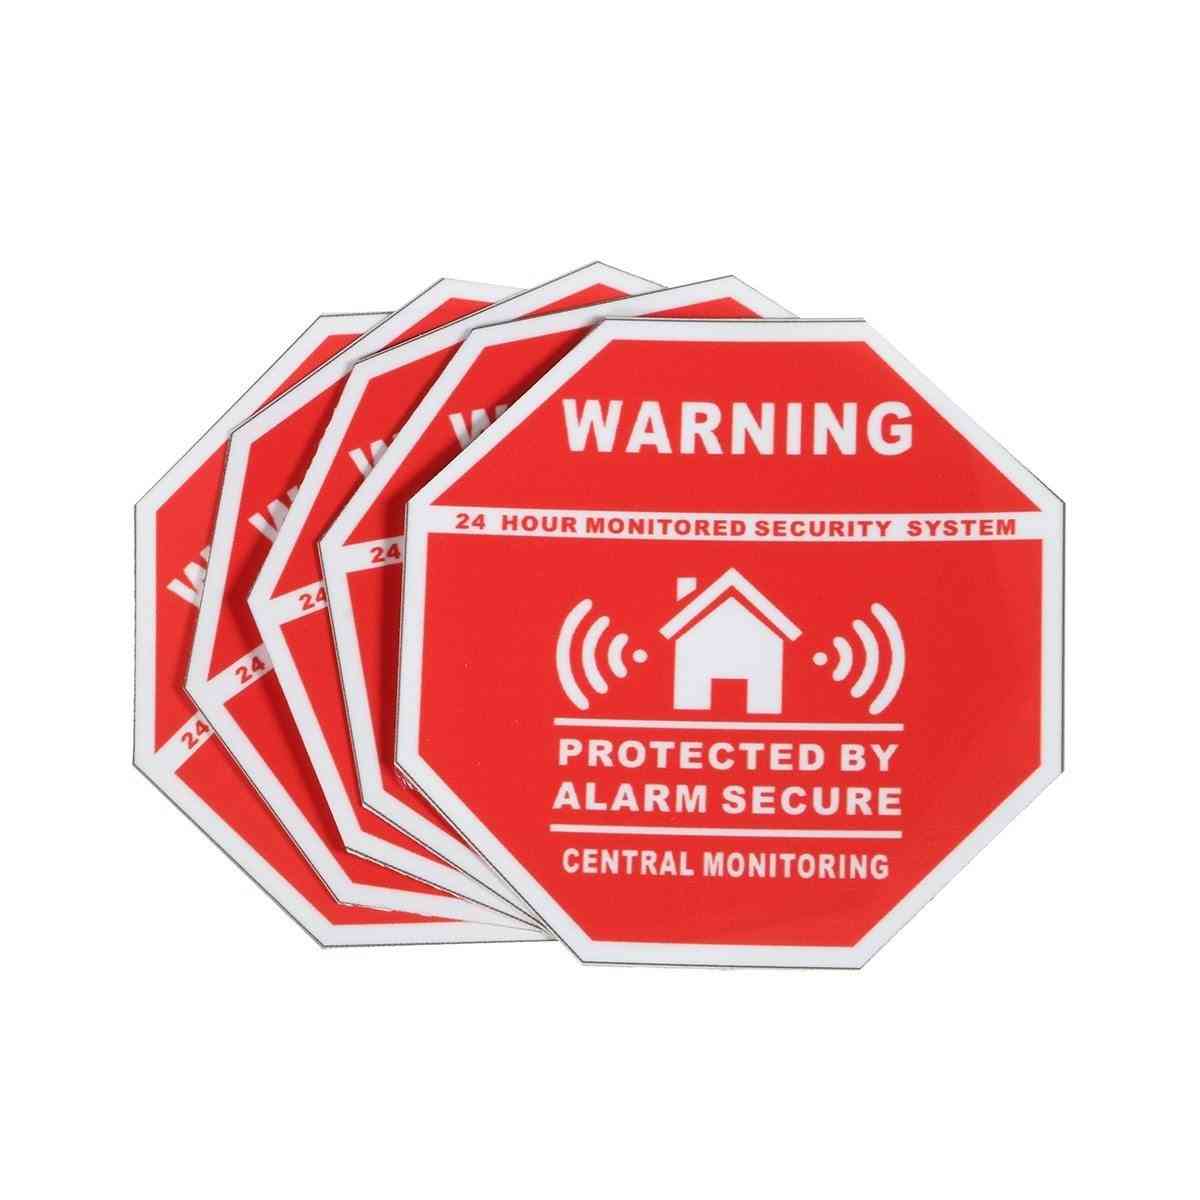 Hjem alarm sikkerhed klistermærker, mærkater skilte til vinduer og døre